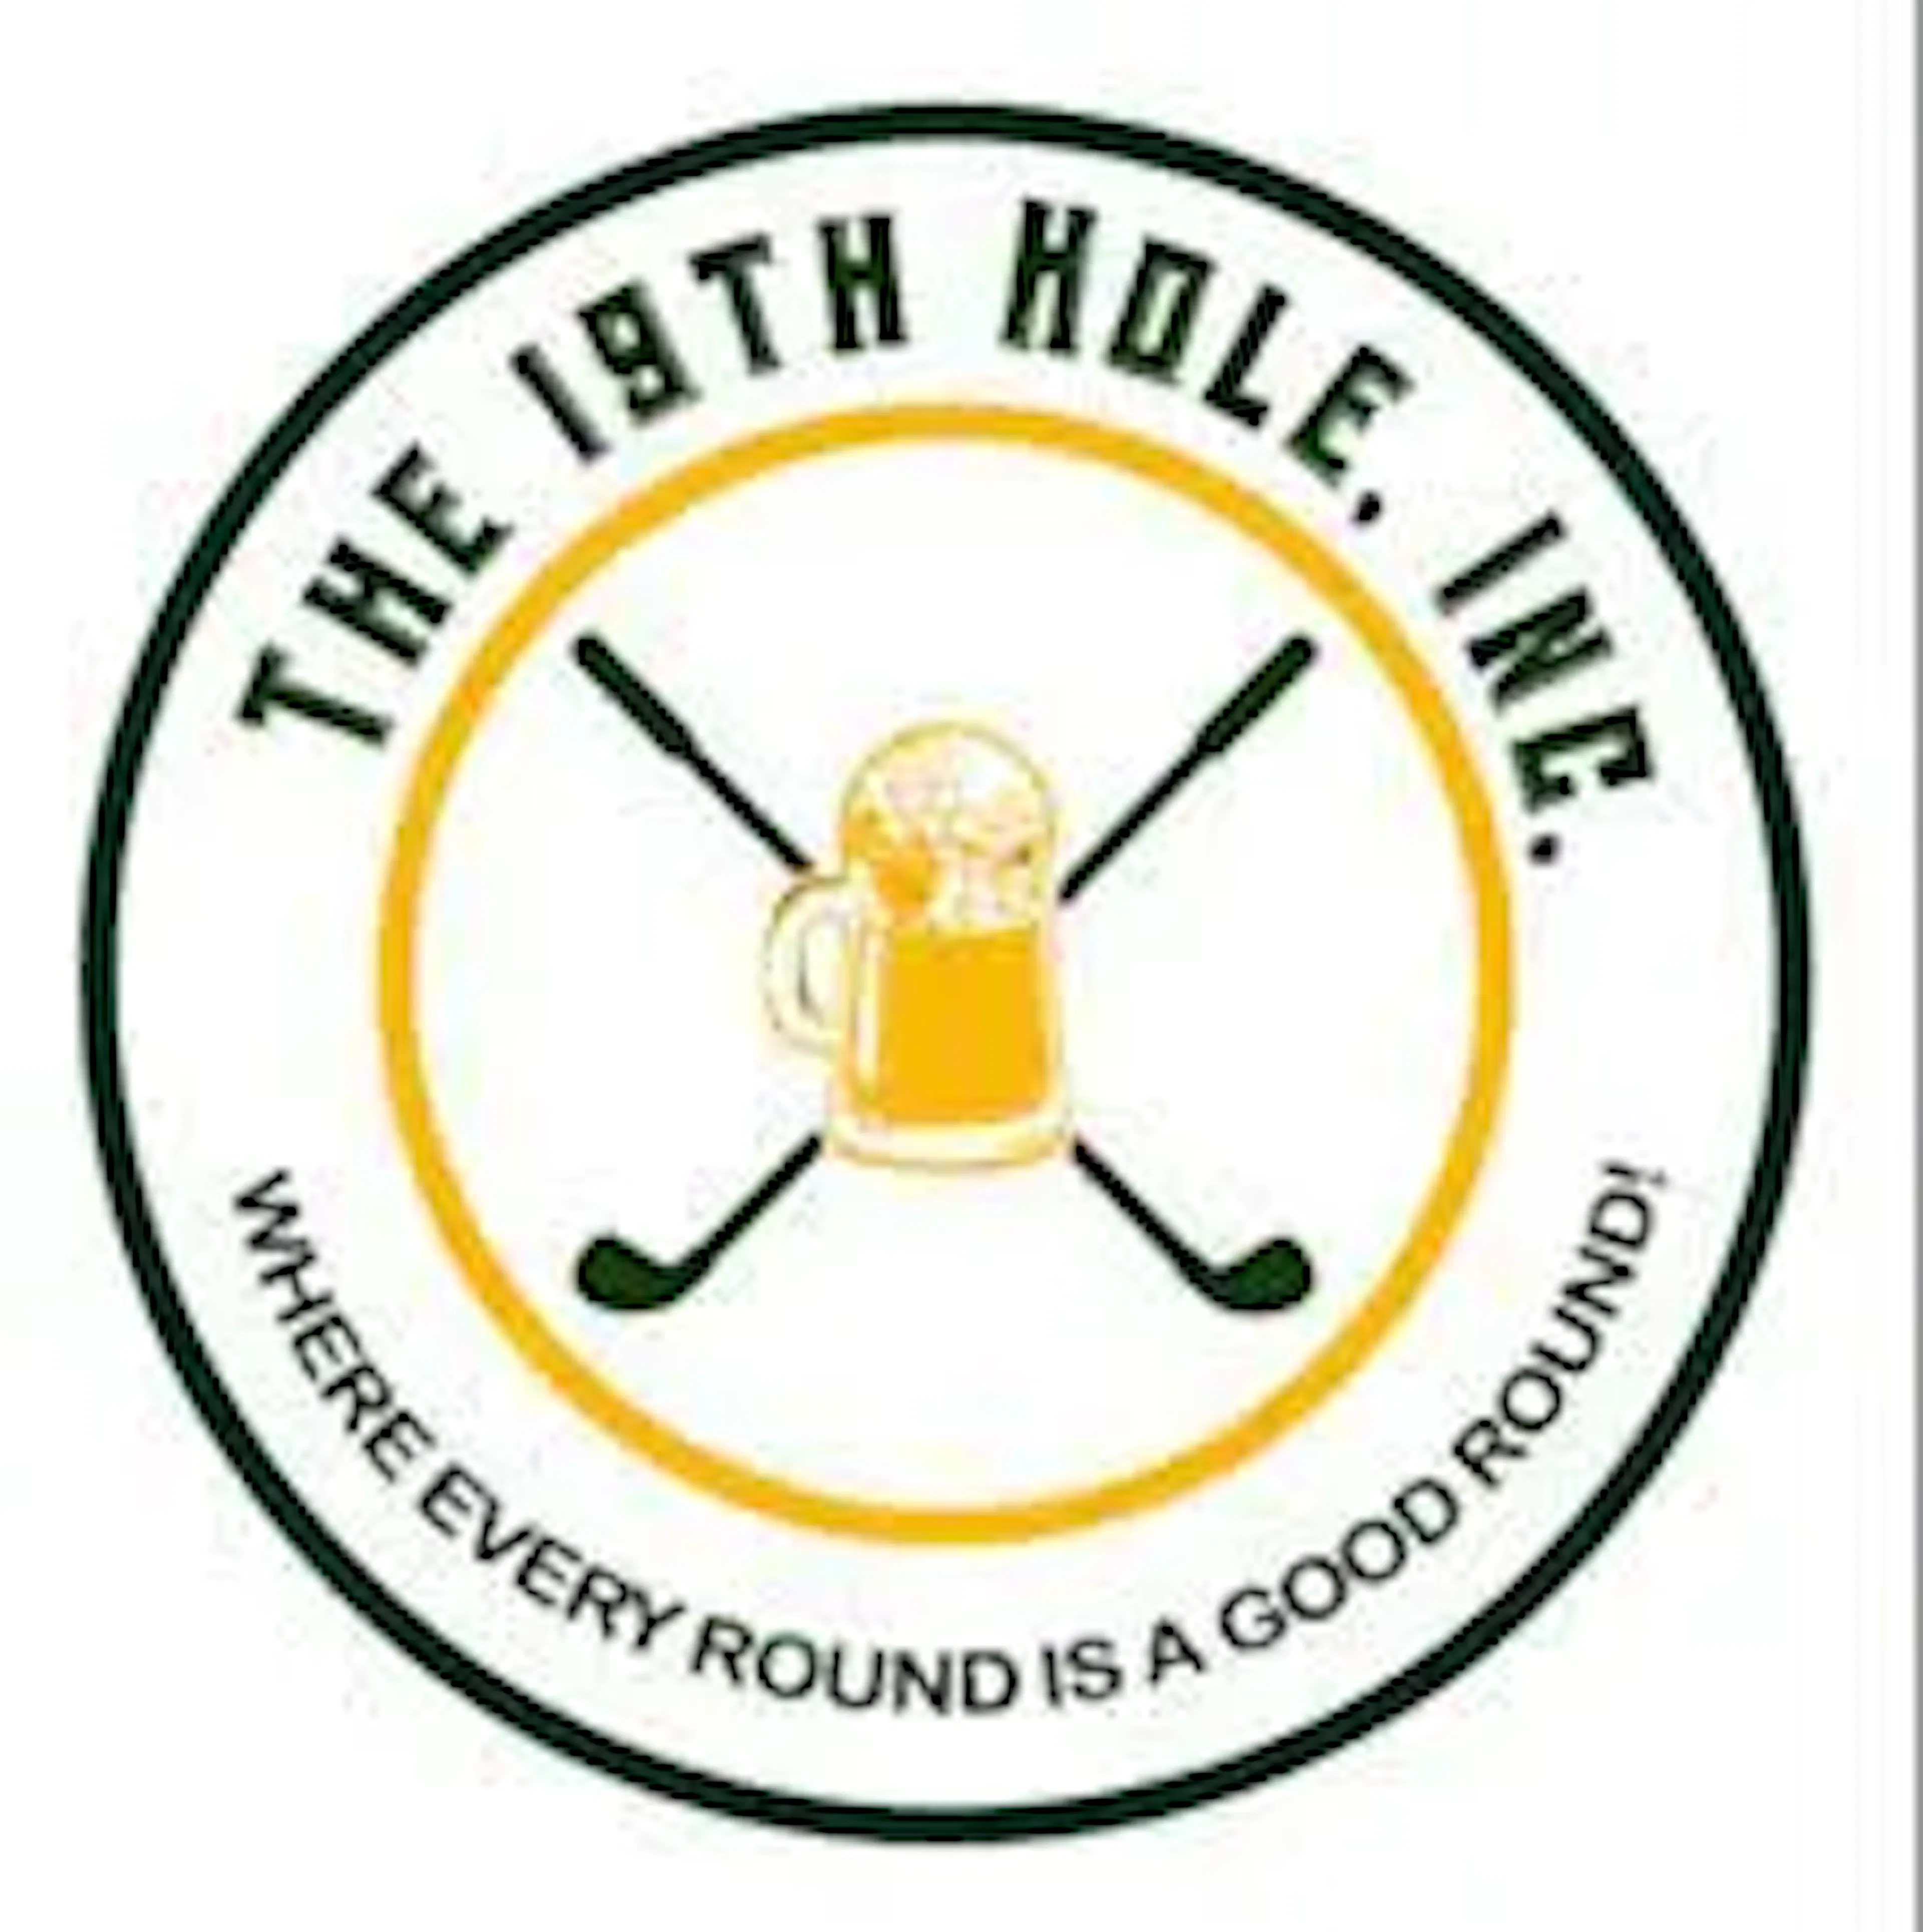 the 19th hole, inc.